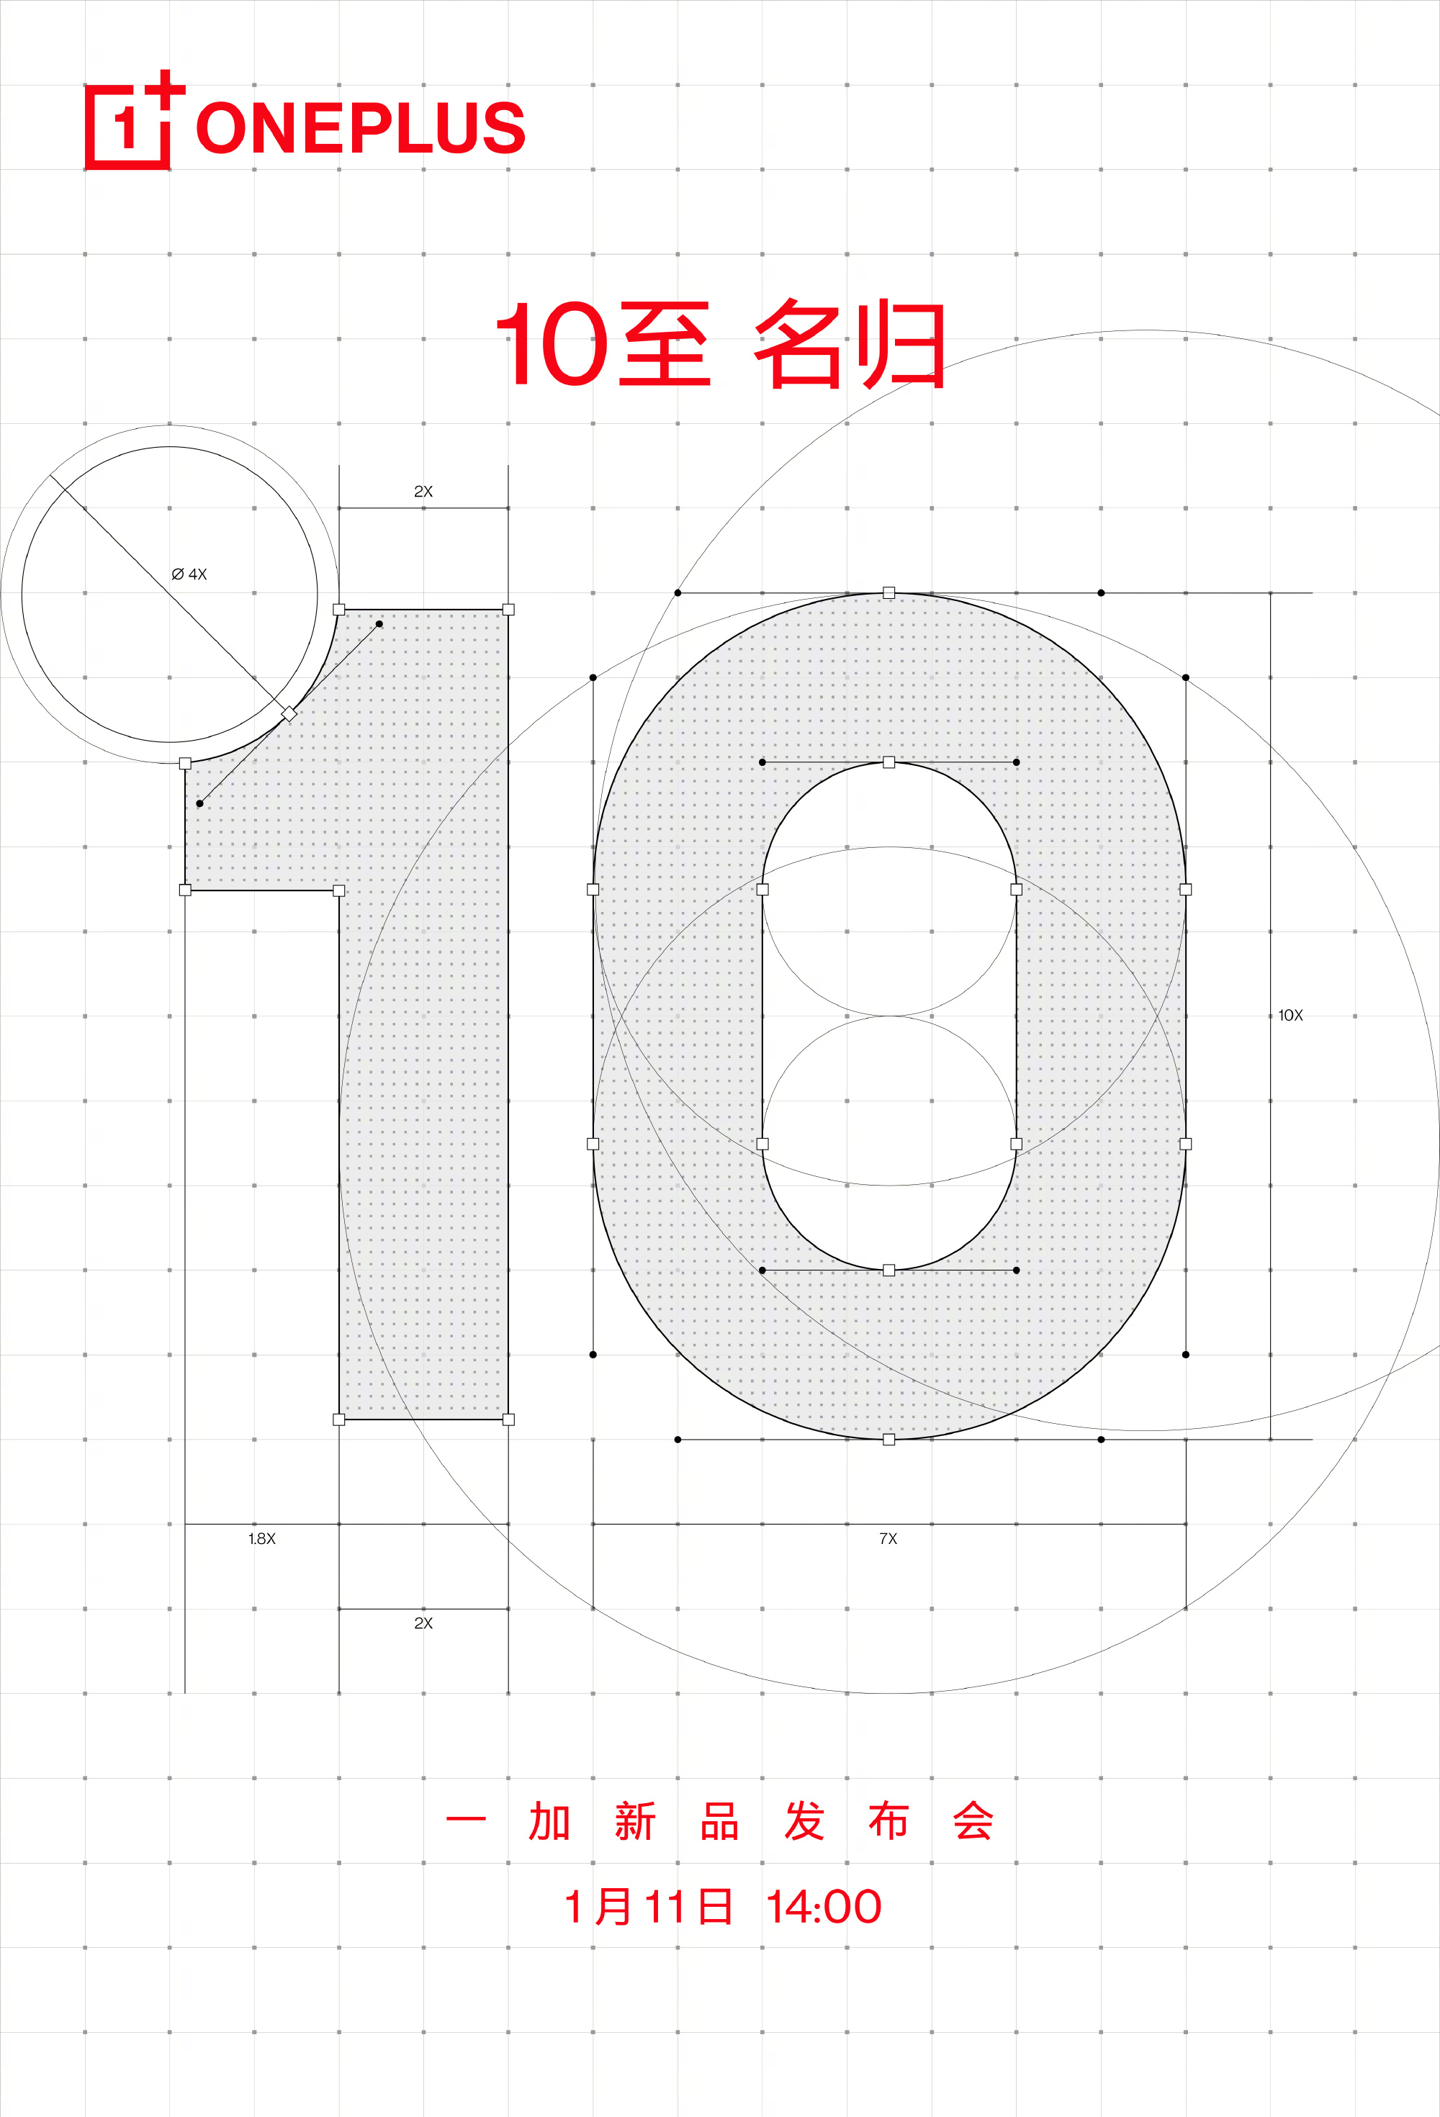 Imagen promocional de OnePlus-10